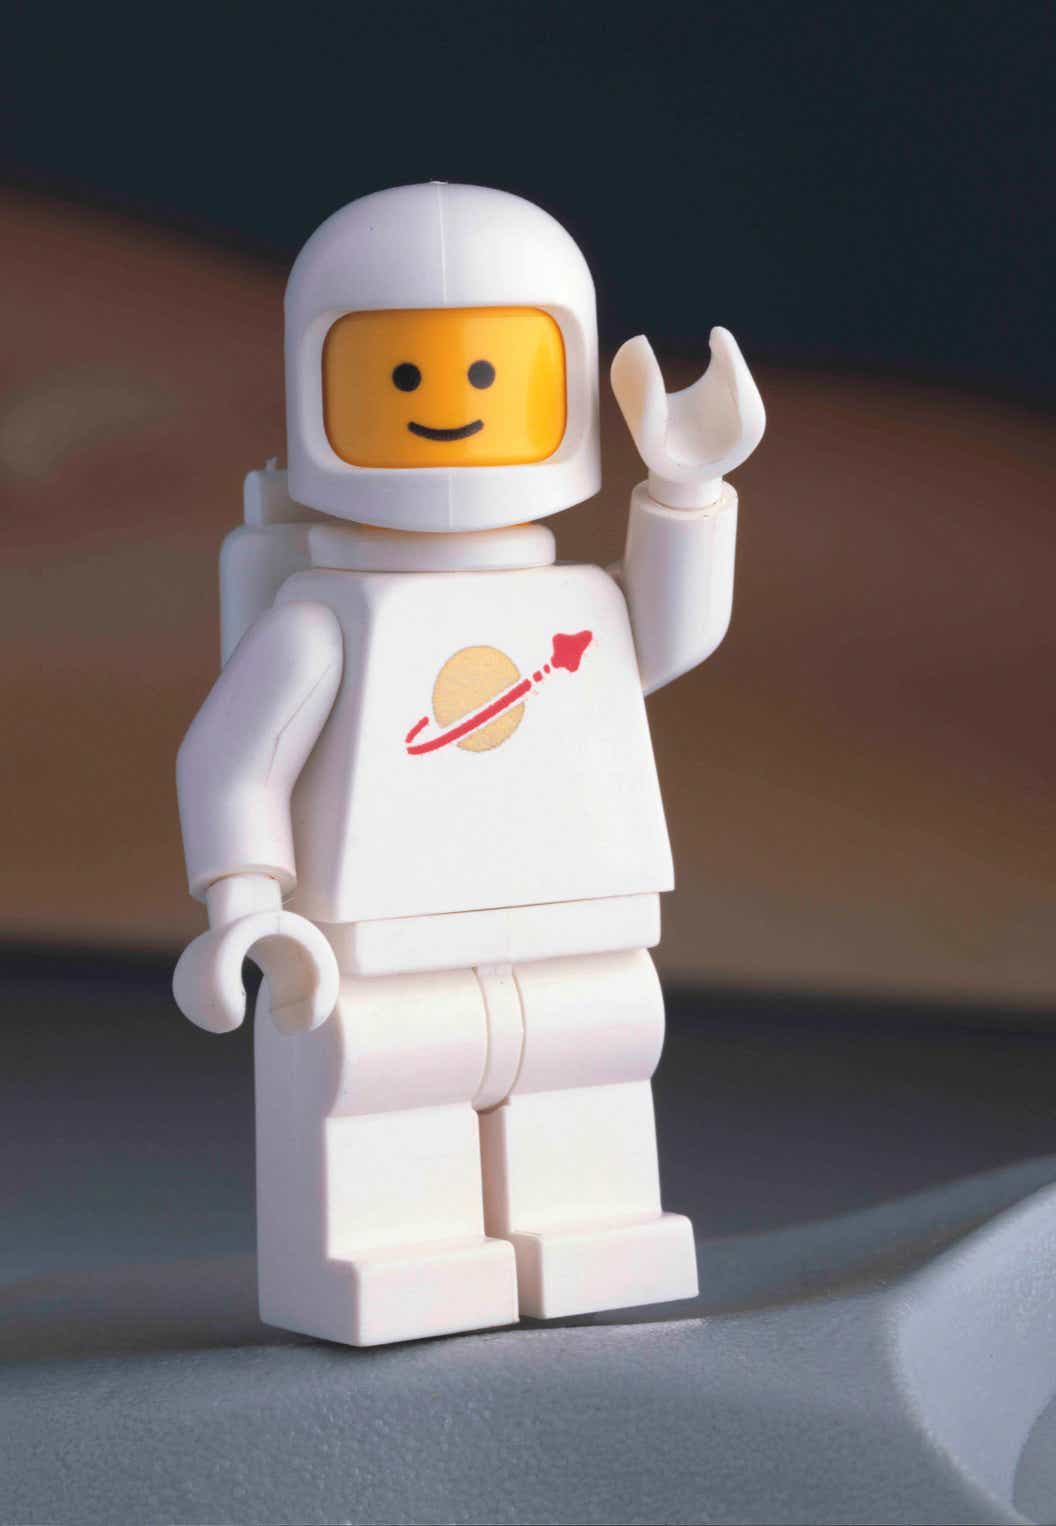 Efterligning handling fintælling LEGO® Space - LEGO® History - LEGO.com IN